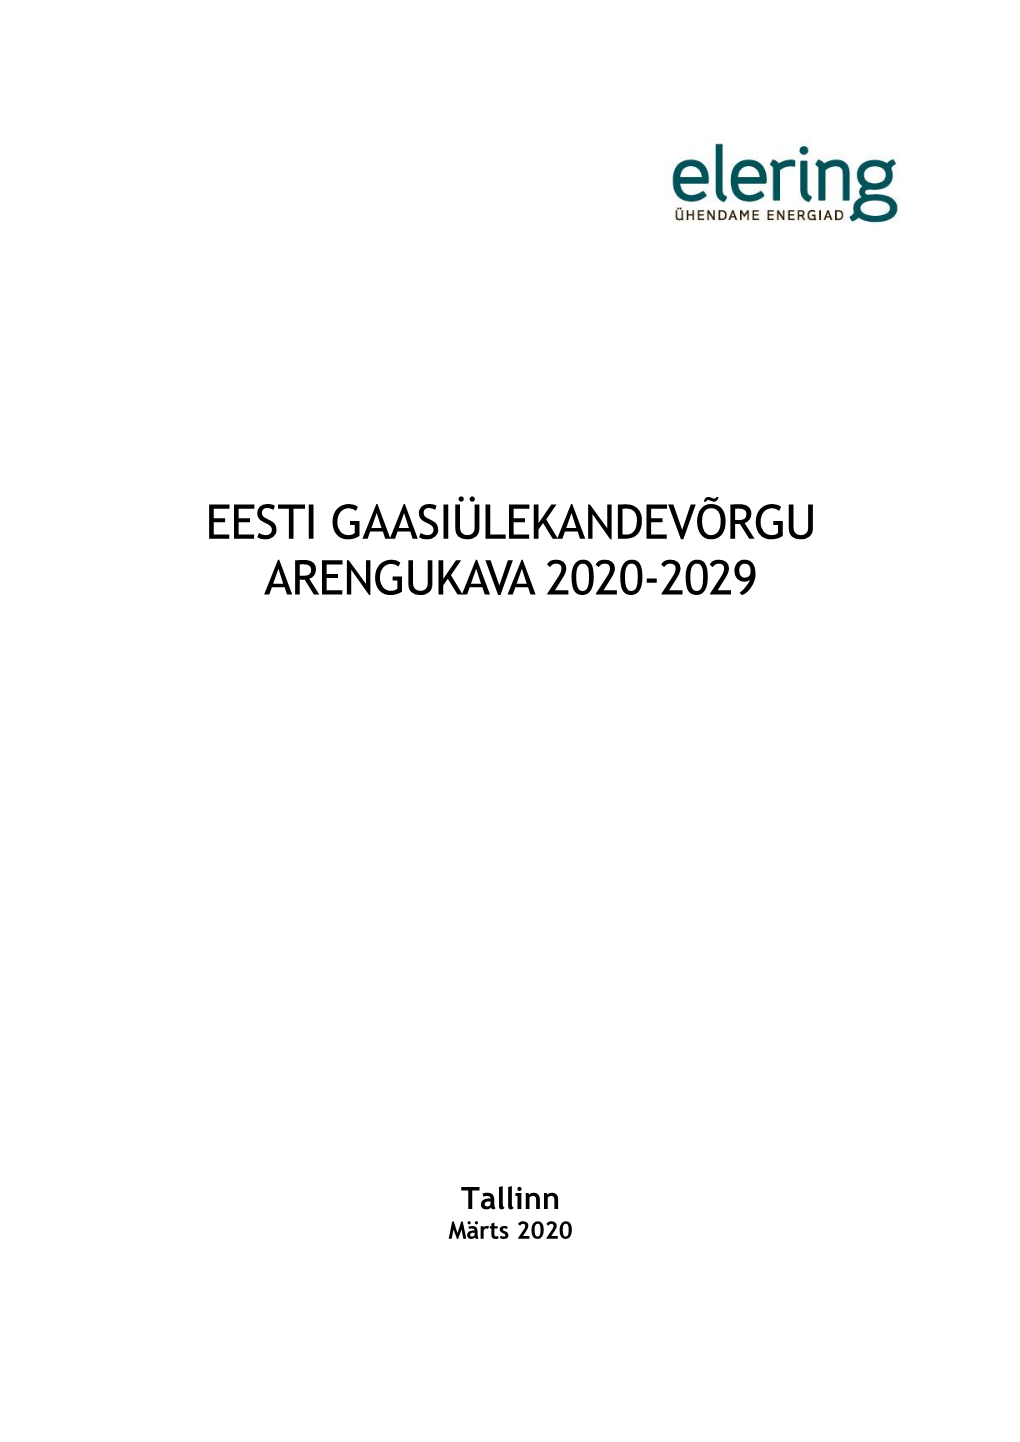 Eesti Gaasiülekandevõrgu Arengukava 2020-2029